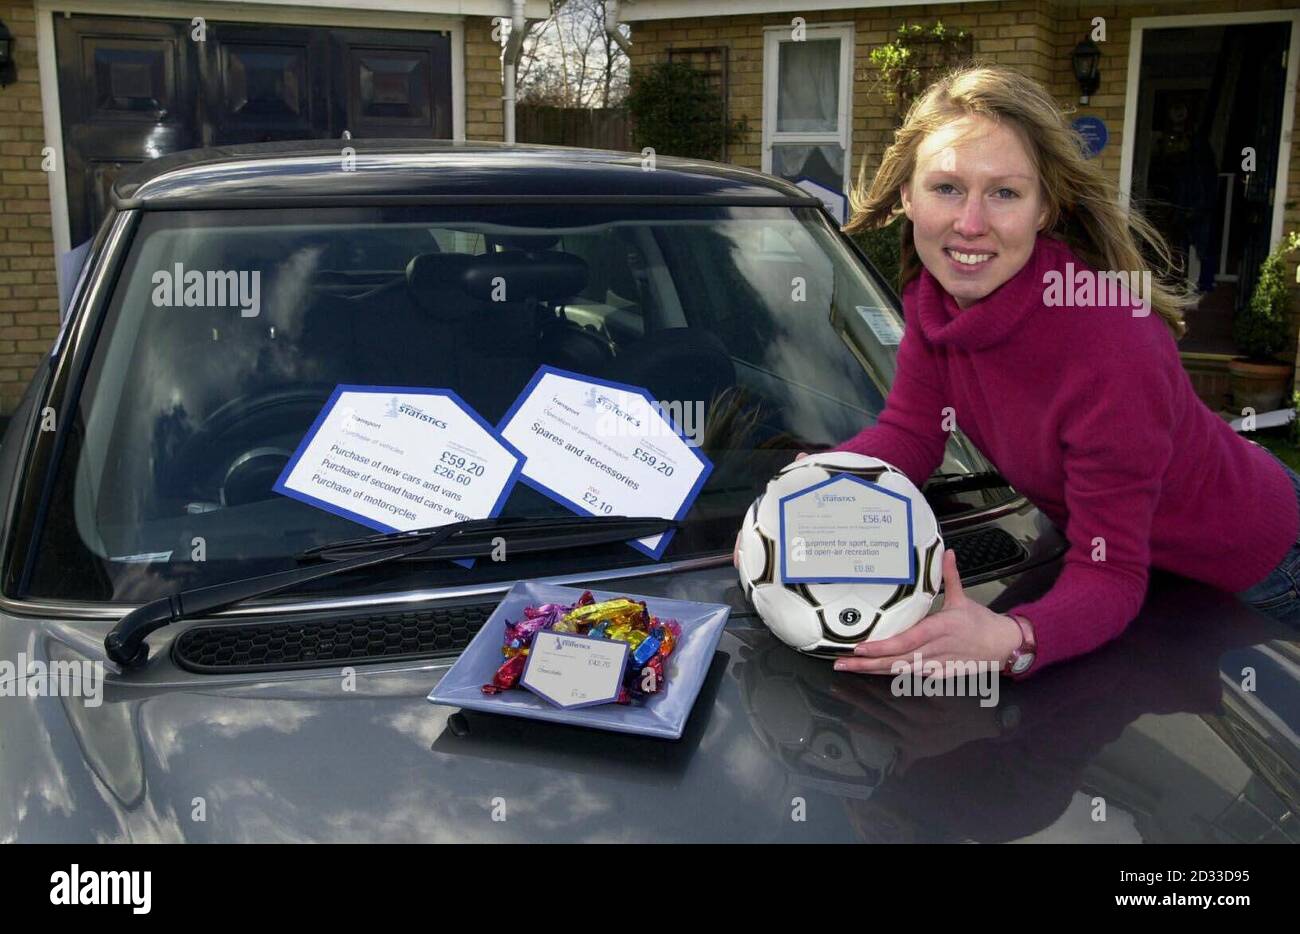 Consulente PR, Becky Biswell visualizza un'auto e il calcio, al di fuori di una casa statistica a Kingstone-upon-Thames per dare un vivo ripesentation di ciò che la famiglia media del Regno Unito spende i loro soldi su. Foto Stock